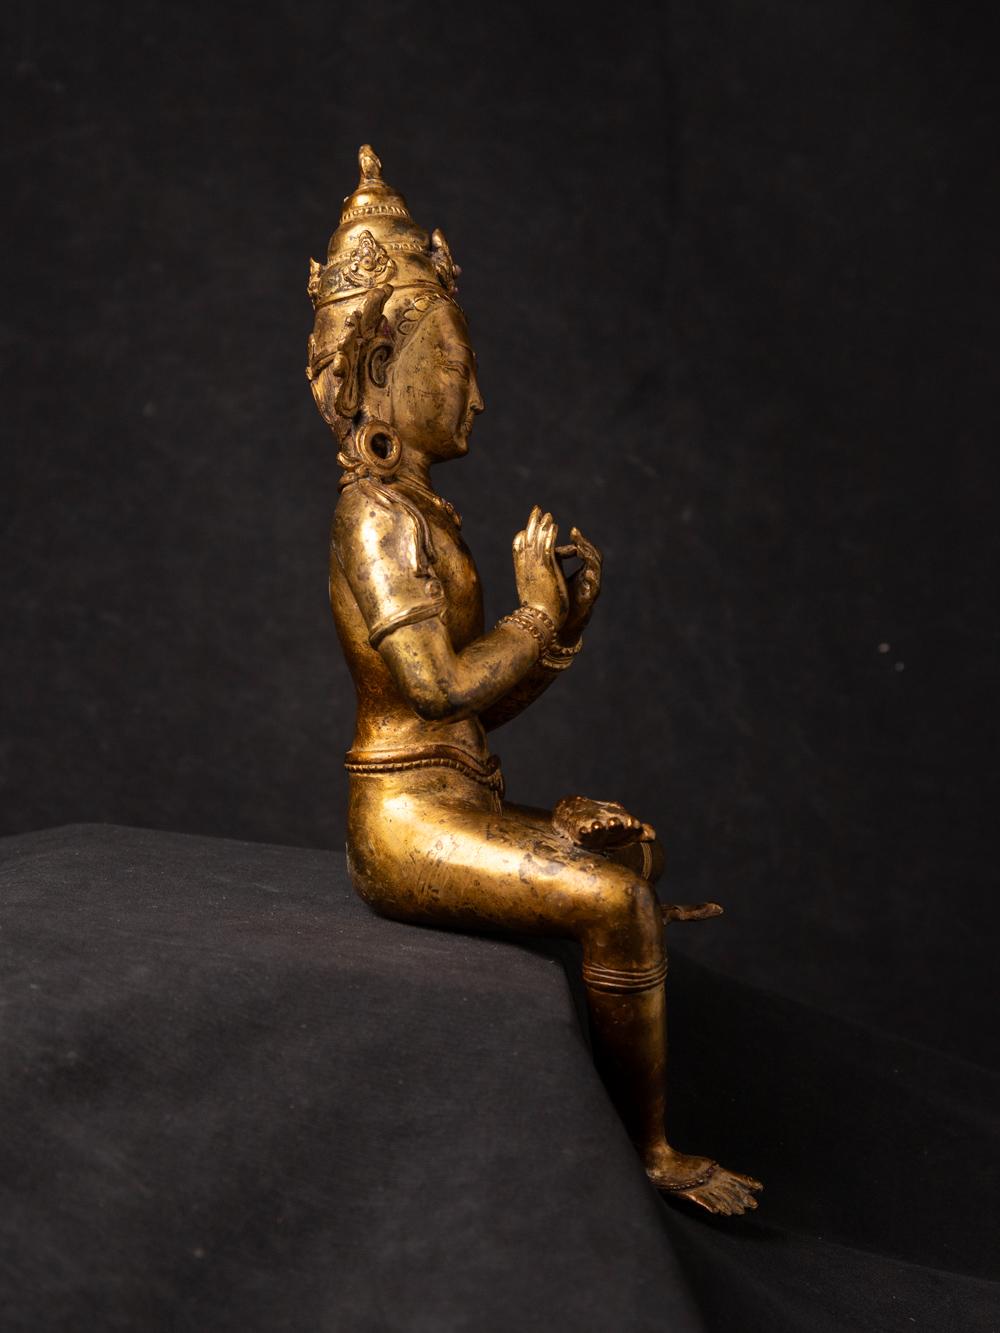 Cette statue de bodhisattva népalais en bronze ancien est une représentation exquise d'une figure vénérée du bouddhisme tibétain. Fabriquée en bronze, elle mesure 30 cm de haut pour 10,7 cm de large et 10 cm de profondeur, ce qui en fait une œuvre